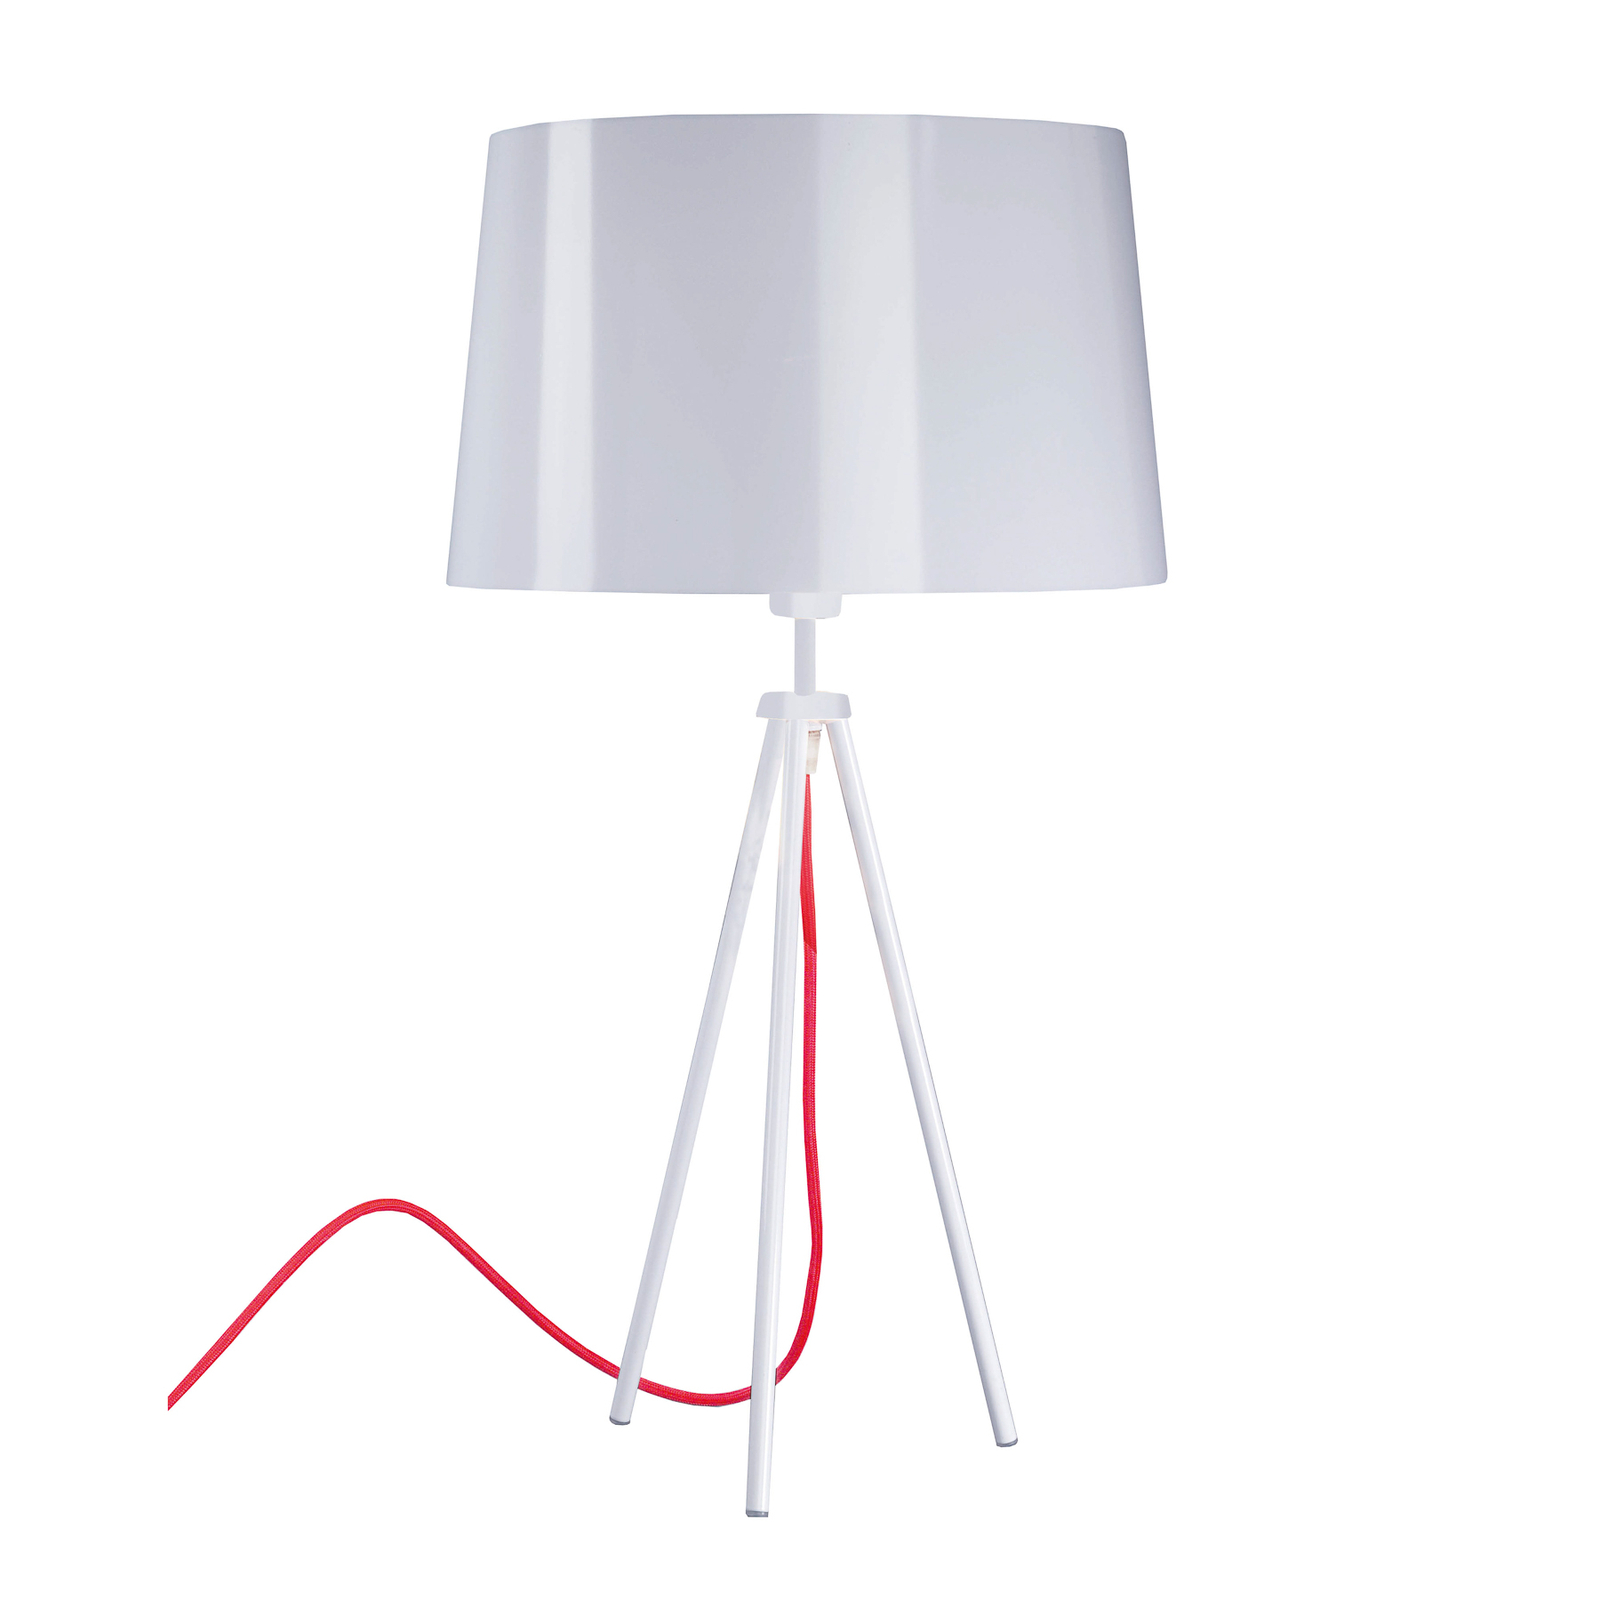 Aluminor Tropic asztali lámpa fehér, kábel piros